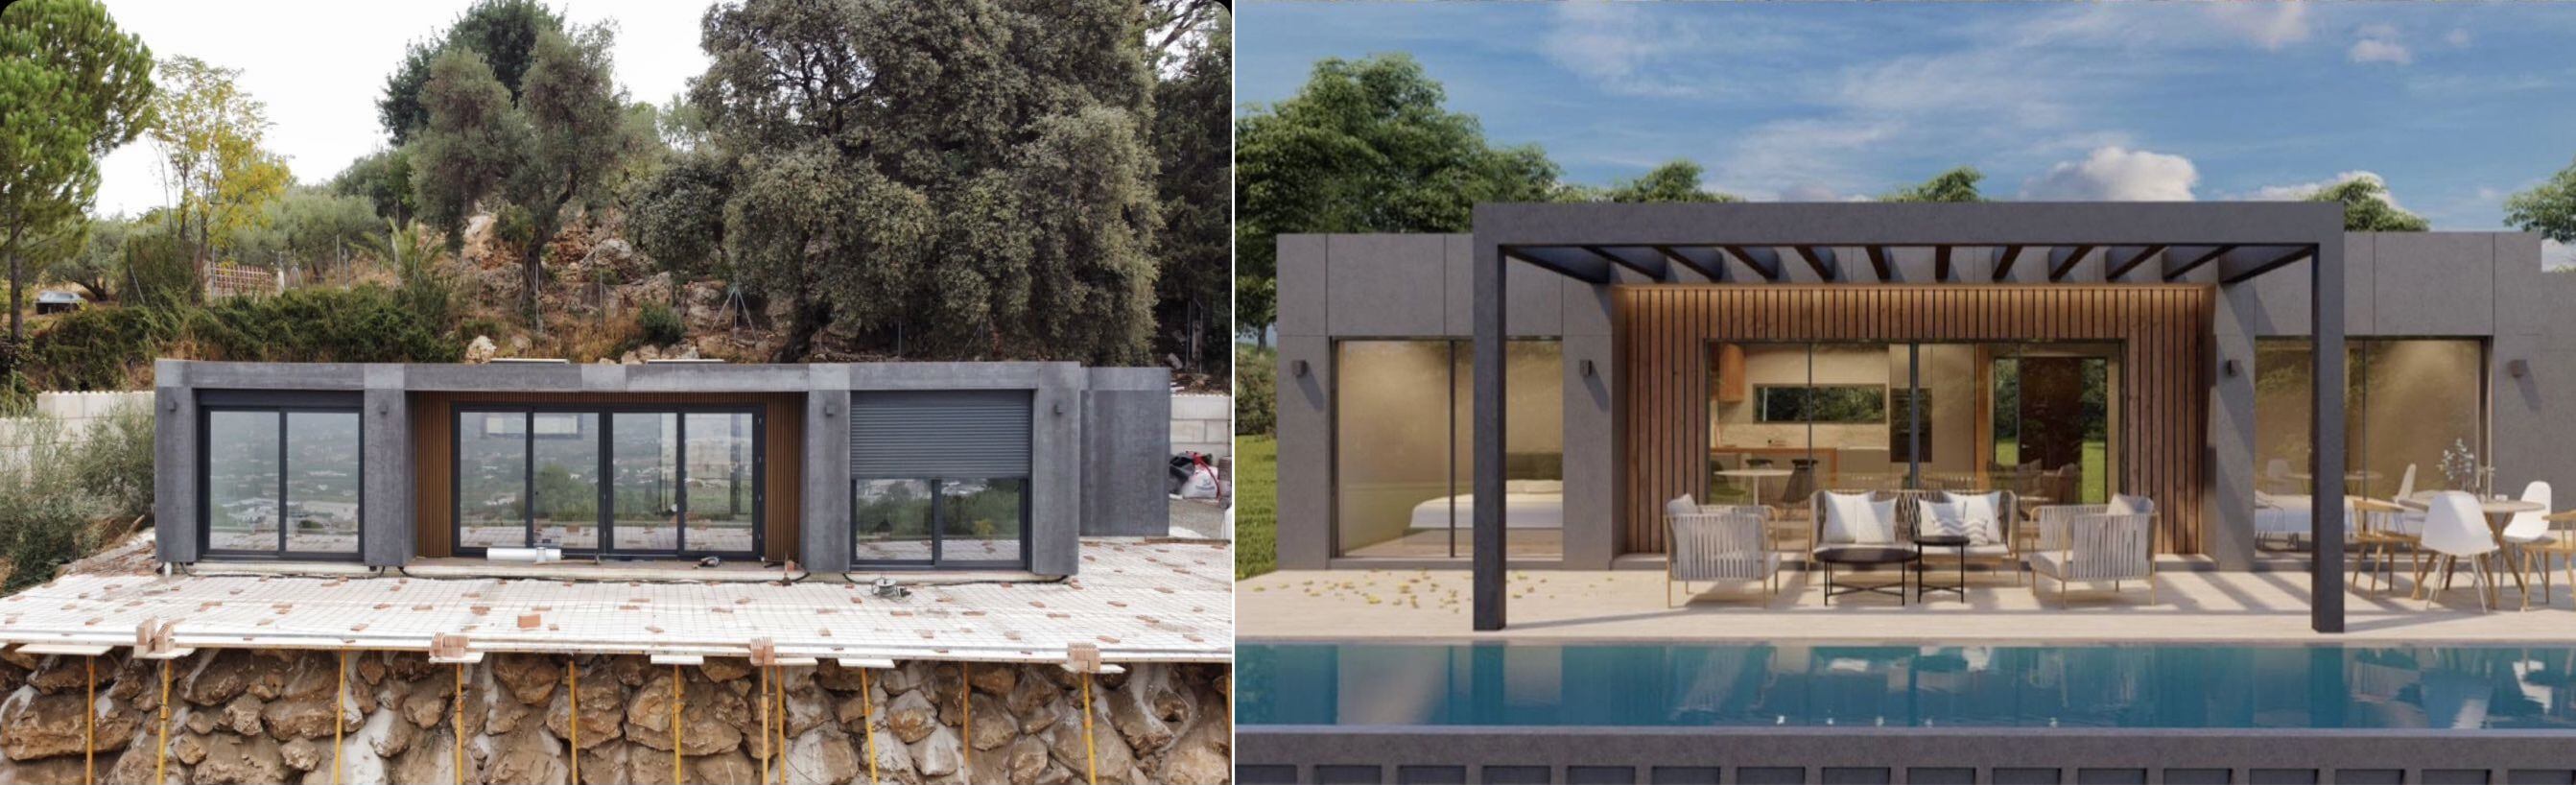 Casa contenedor que J&J Containers está construyendo en Benalmádena (Málaga) para una familia que la va a usar como su residencia habitual. A la derecha, la imagen de cómo quedará la vivienda. 